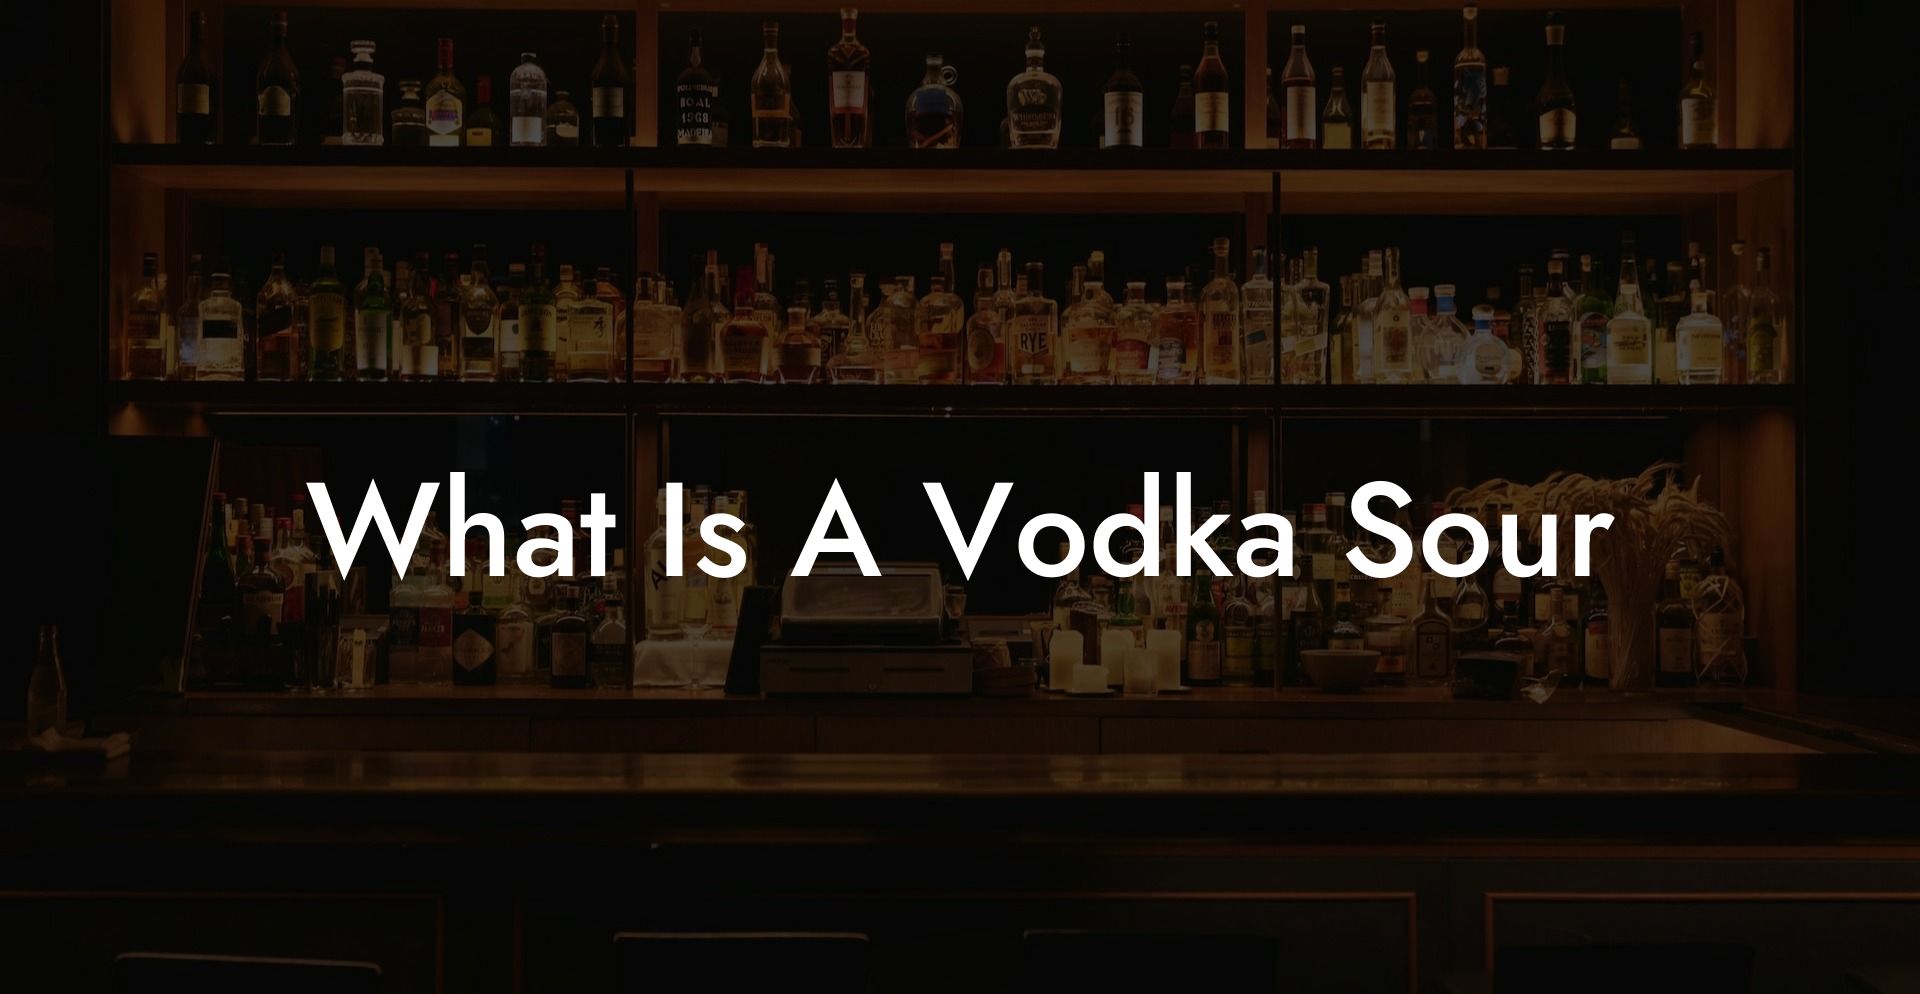 What Is A Vodka Sour